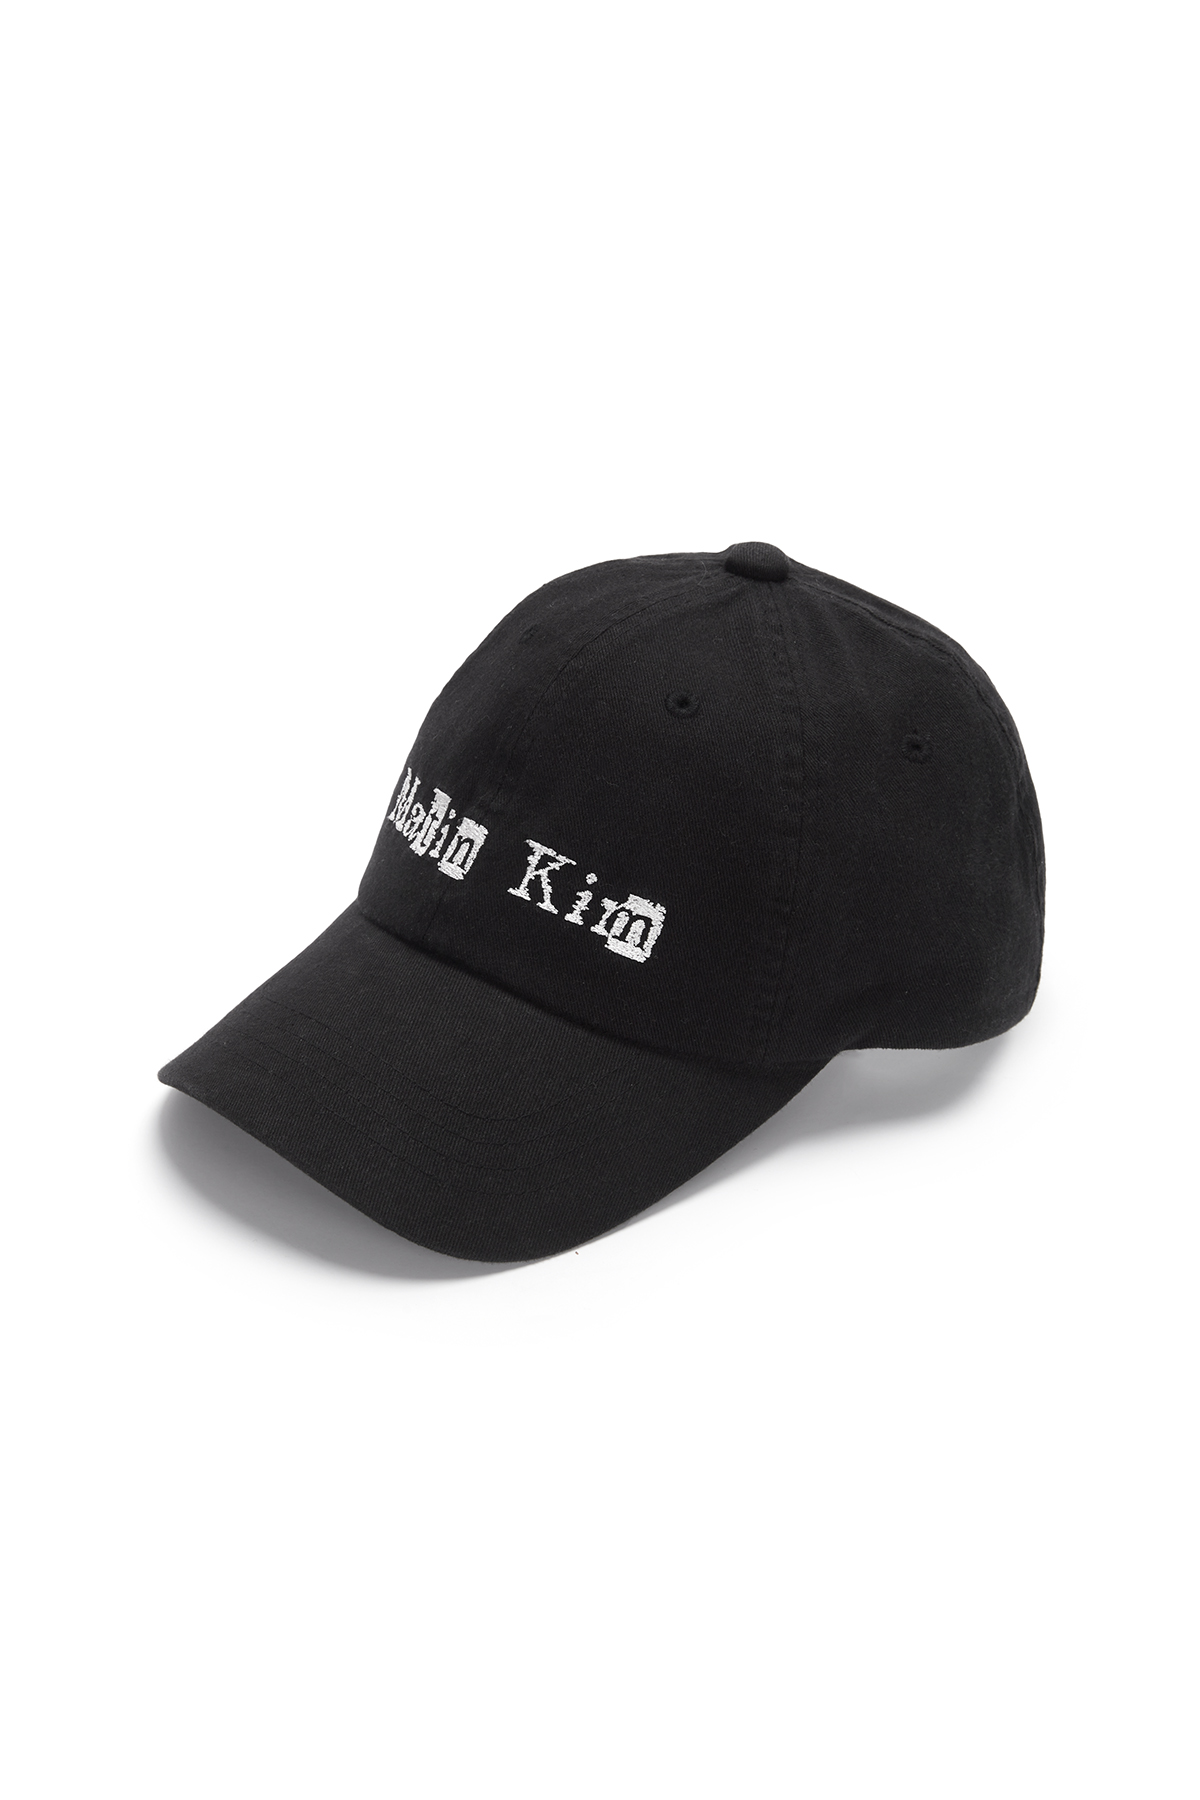 LOGO SCRAP BALL CAP IN BLACK